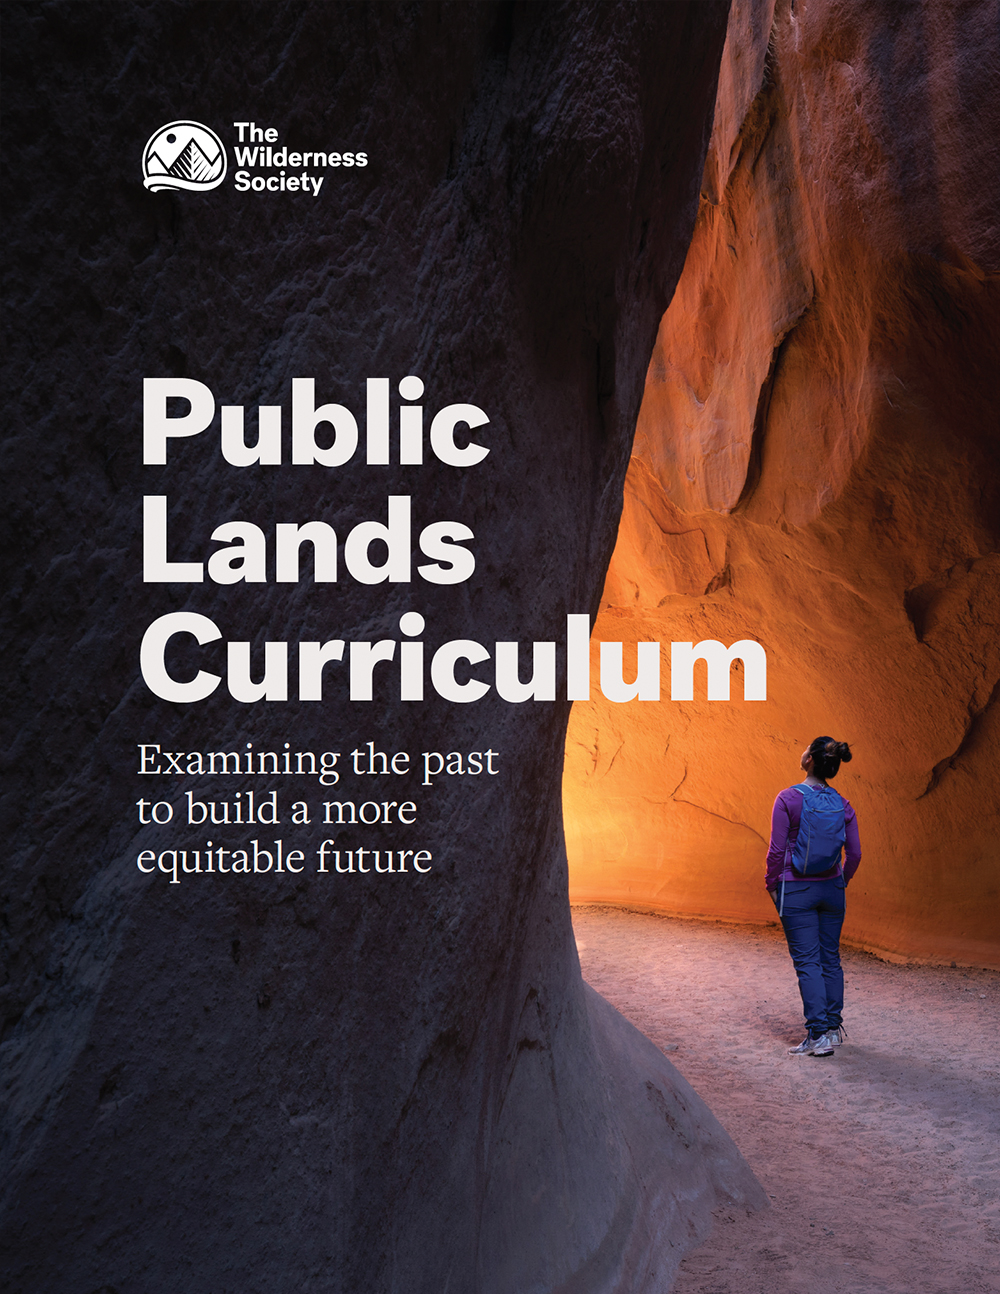 The Public Lands Curriculum